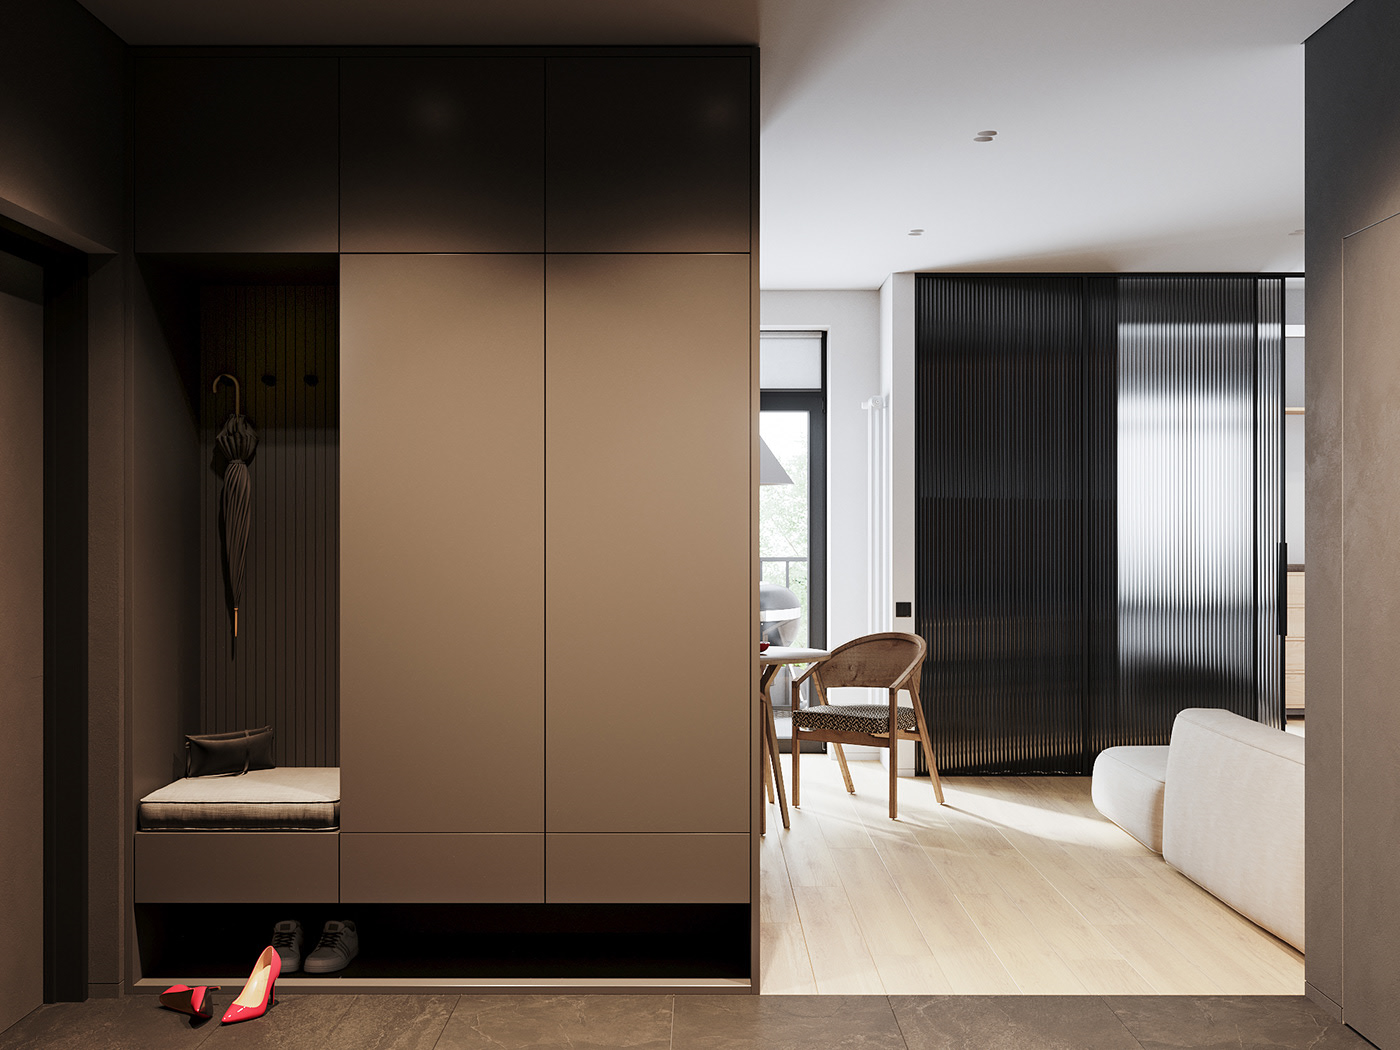 公寓装修,二居室装修,50平米装修,现代简约风格,10-15万装修